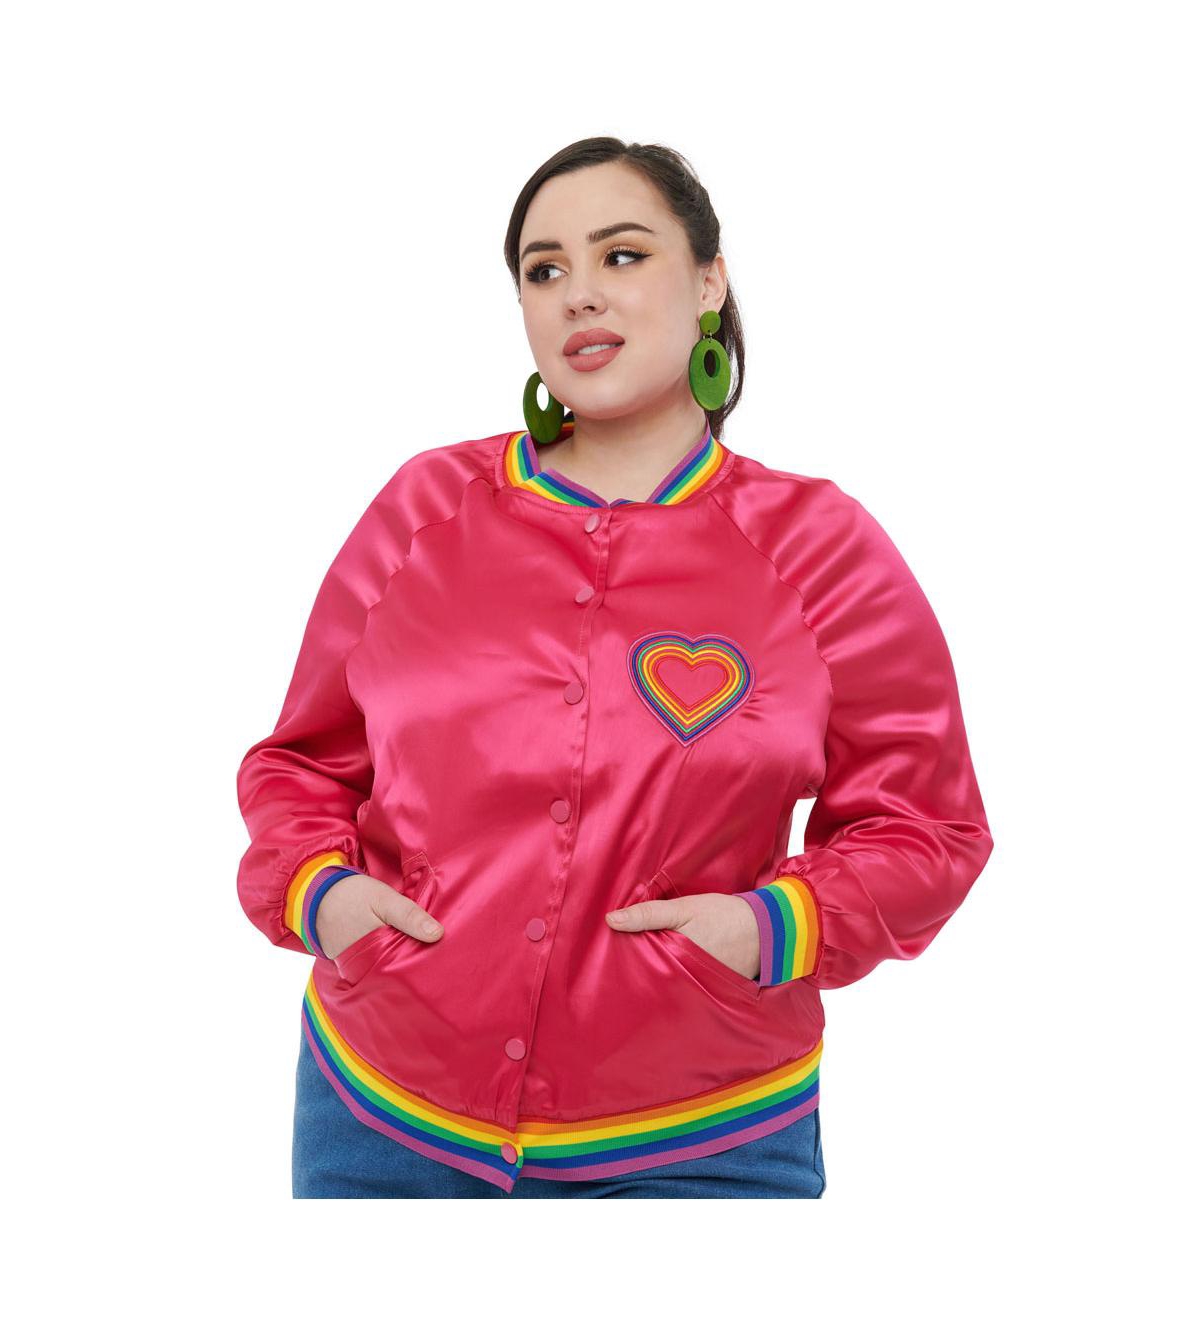 Plus Size Satin Bomber Jacket - Hot pink  rainbow